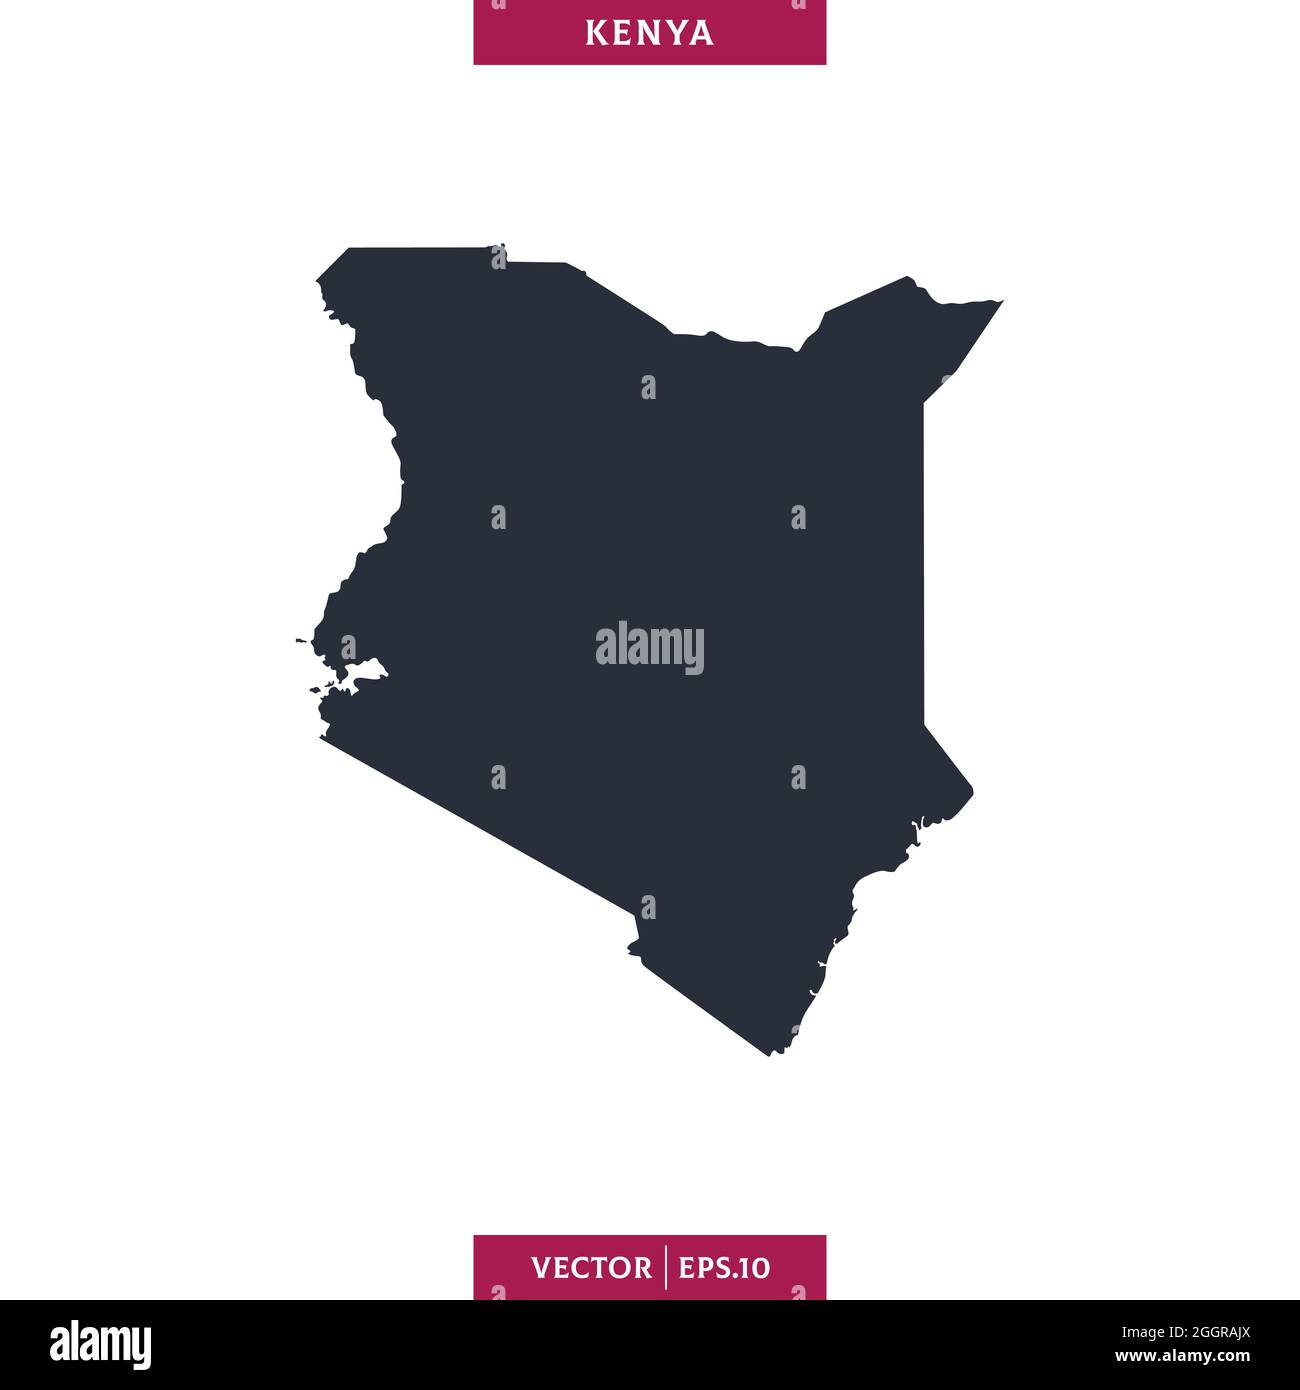 Mappa dettagliata del modello di disegno di illustrazione di stock vettoriale del Kenya. Vettore eps 10. Illustrazione Vettoriale